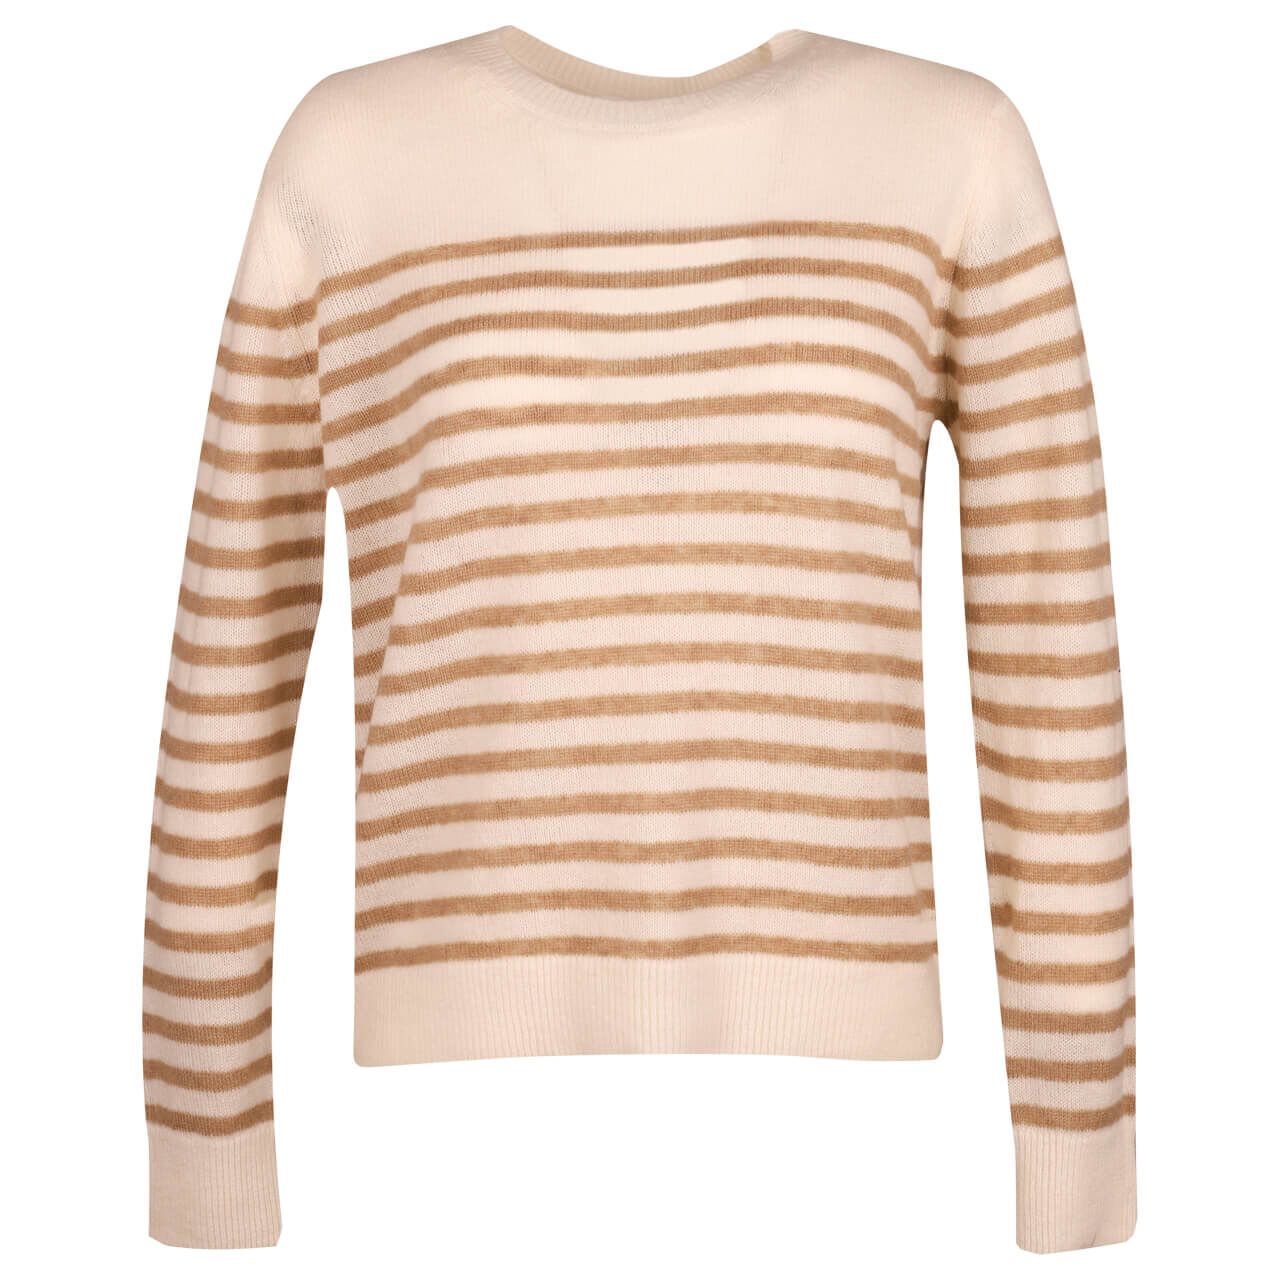 Comma Damen Pullover light creme brown stripes